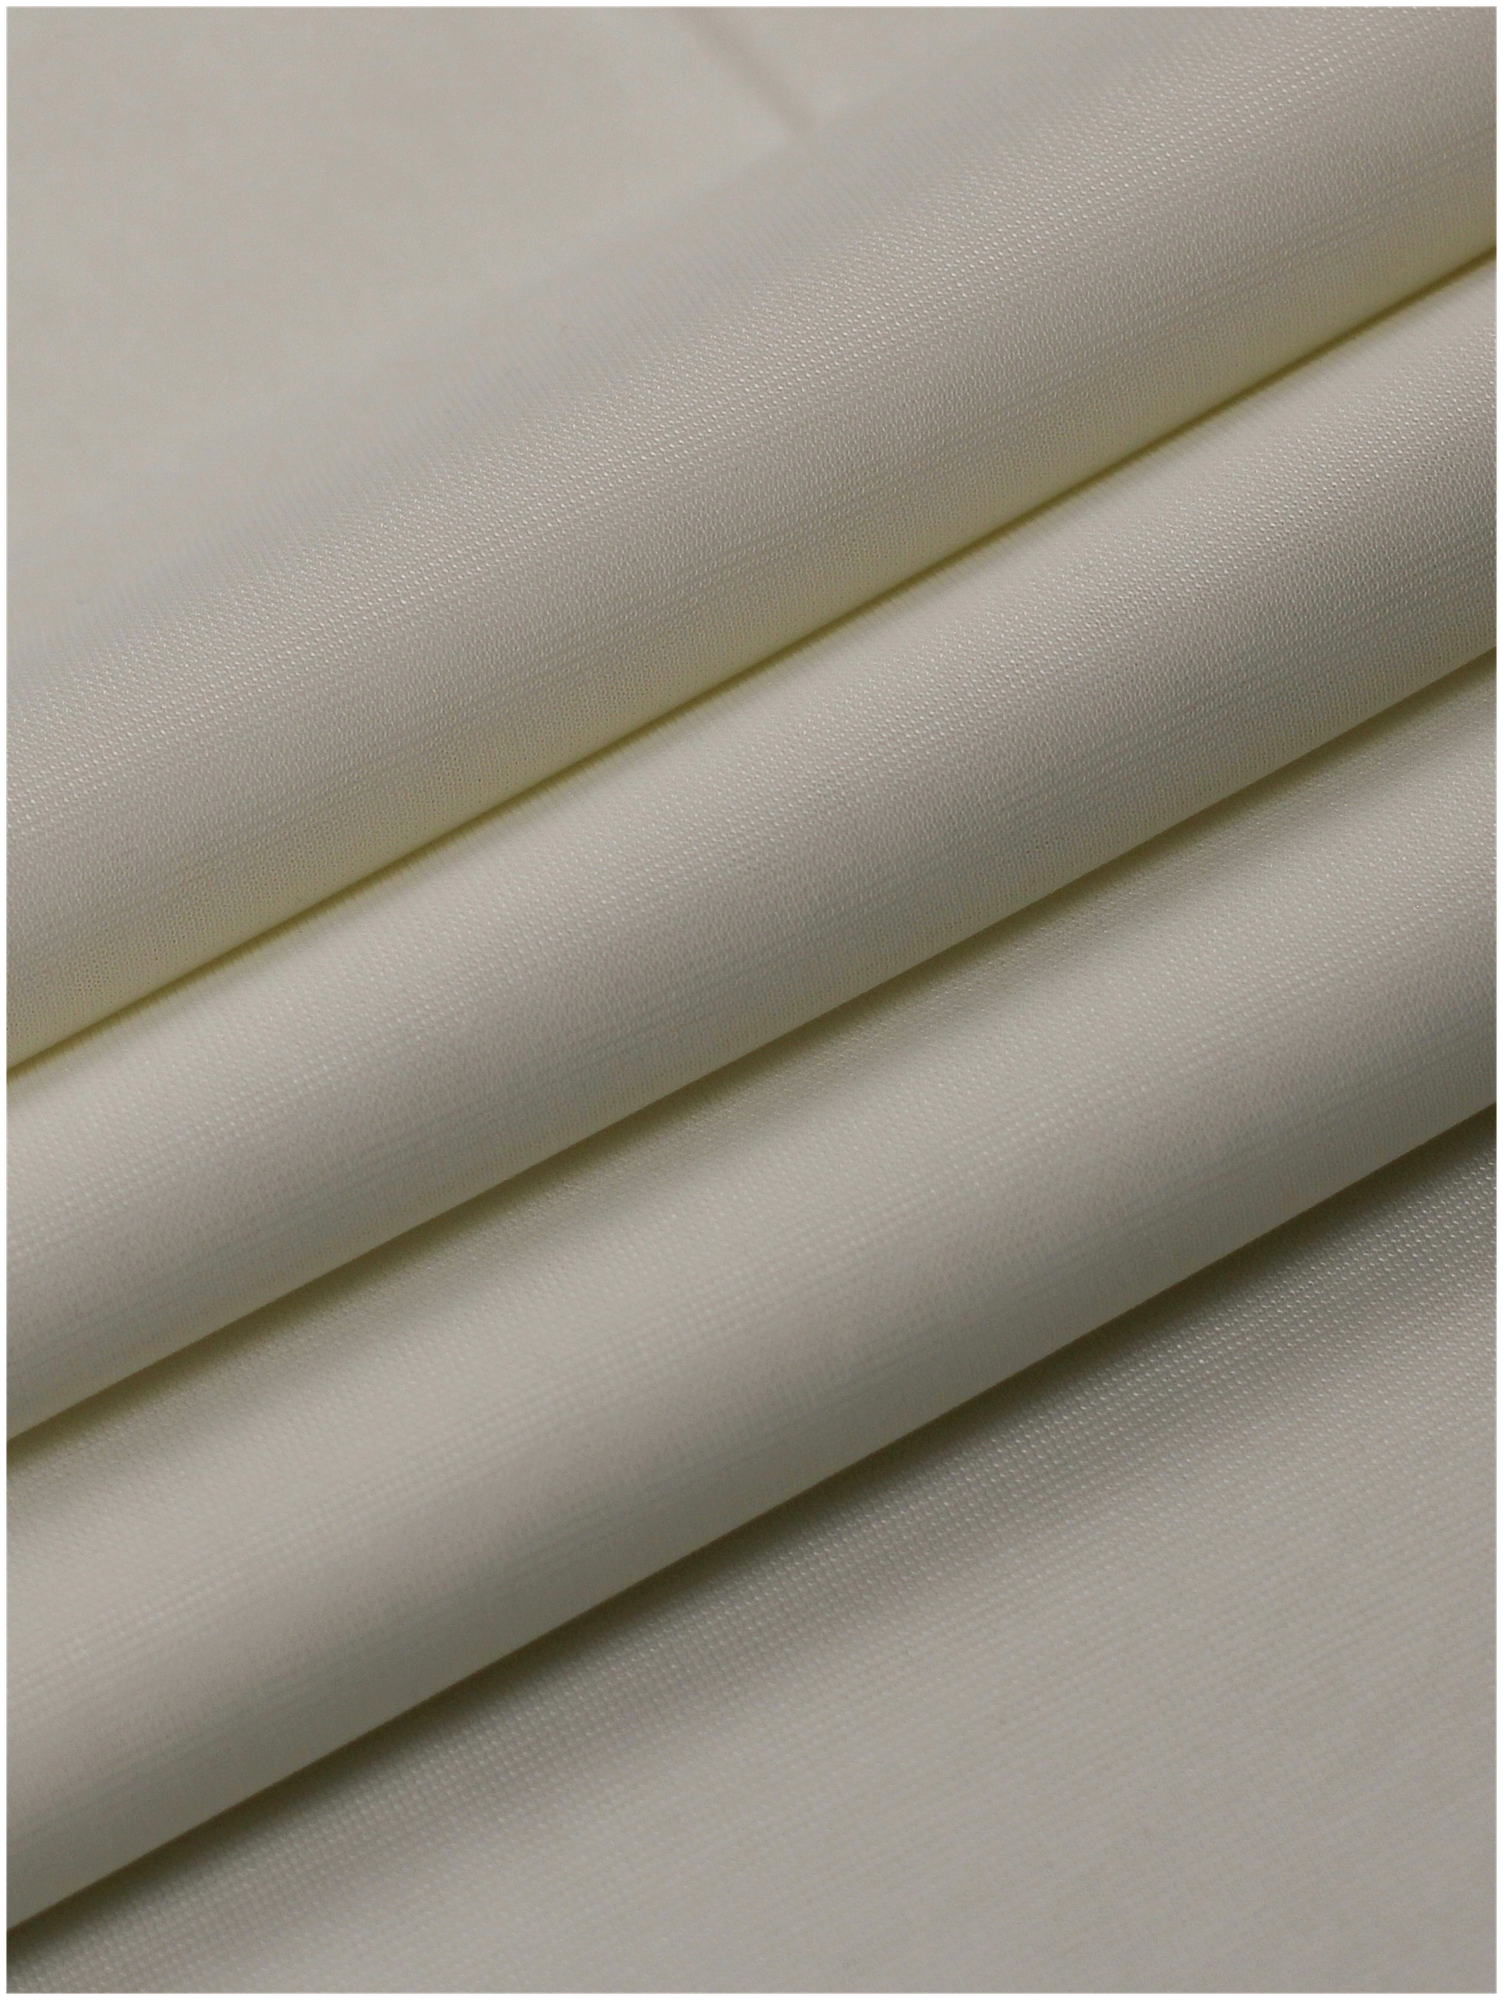 Ткань карманная подкладочная сетка бежевая MDC FABRICS KT-77/ivory для шитья. Полиэстер 100%. Отрез 1.5 метр